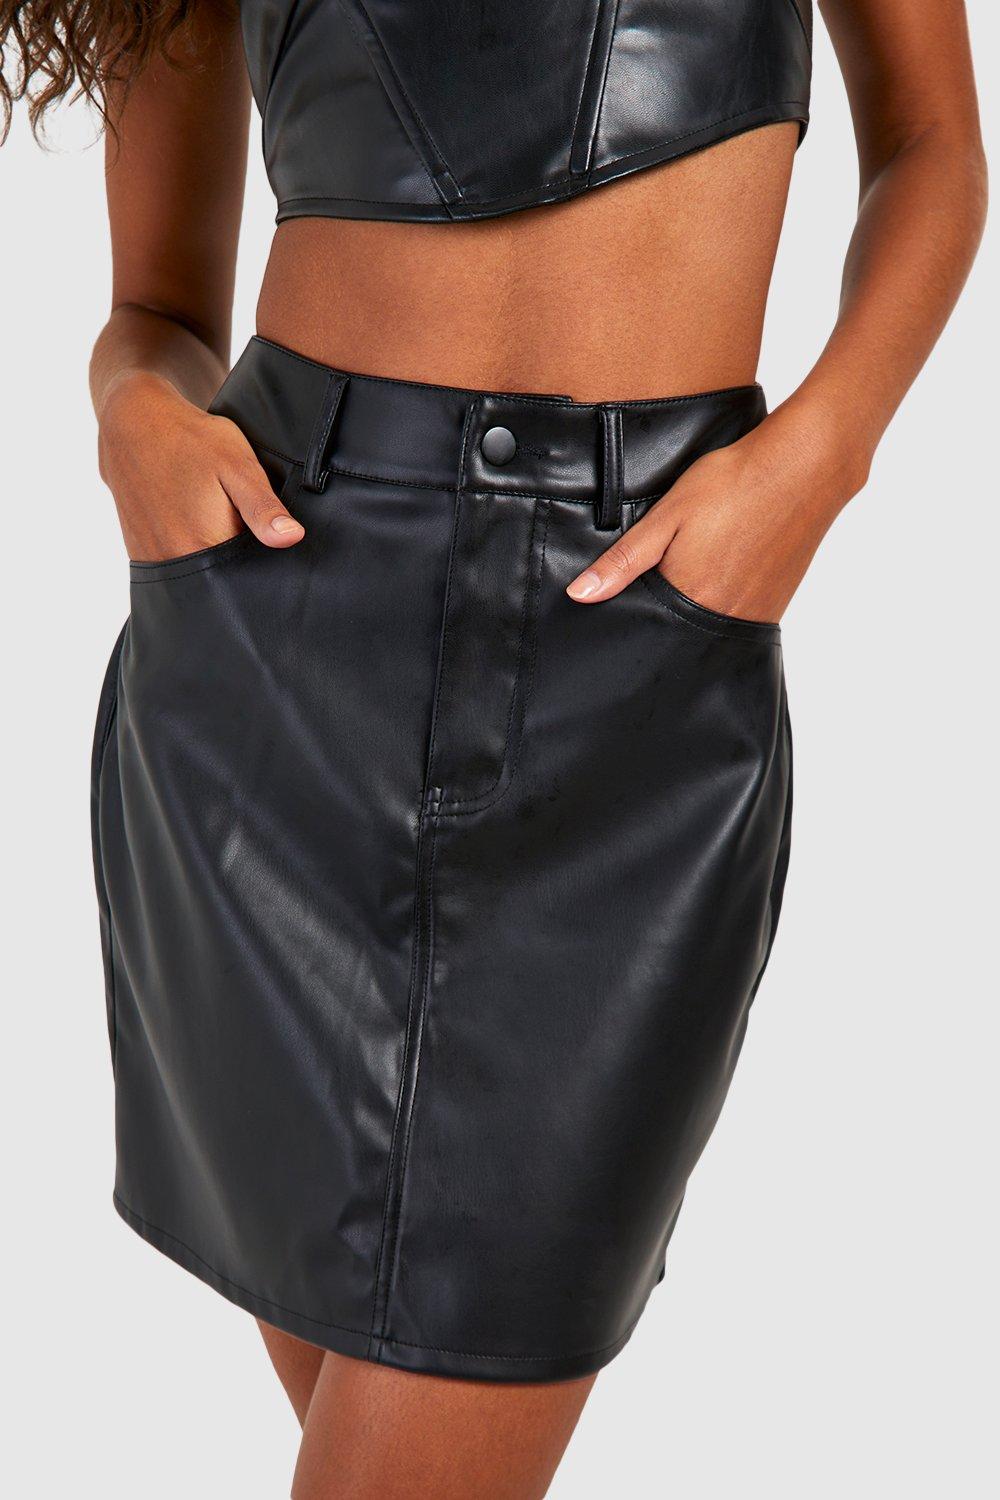 Tall Leather Look High Waisted Mini Skirt